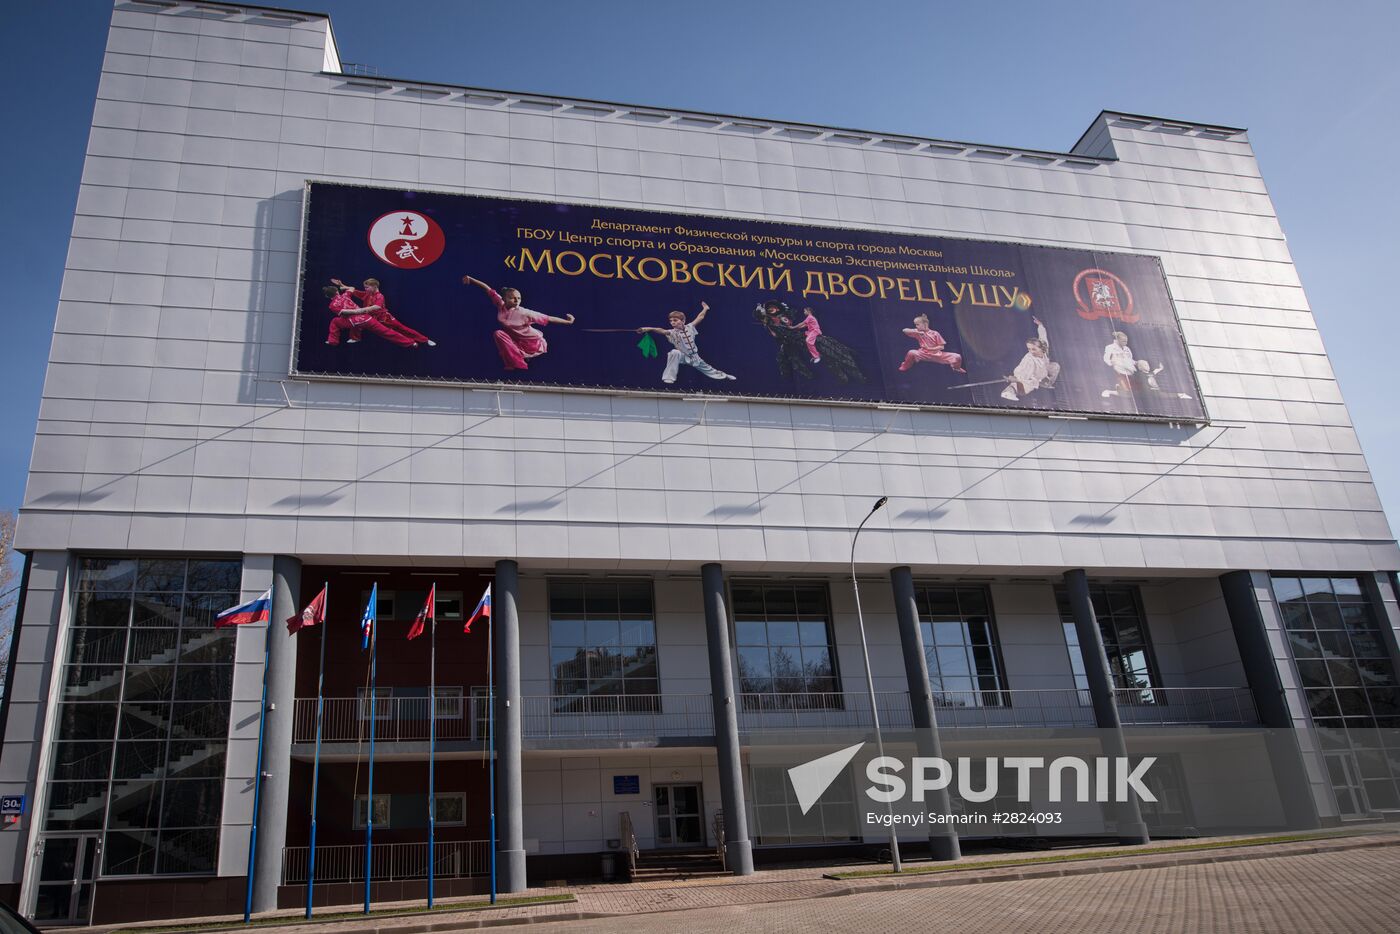 Moscow Mayor Sergei Sobyanin opens Russia's largest wushu venue